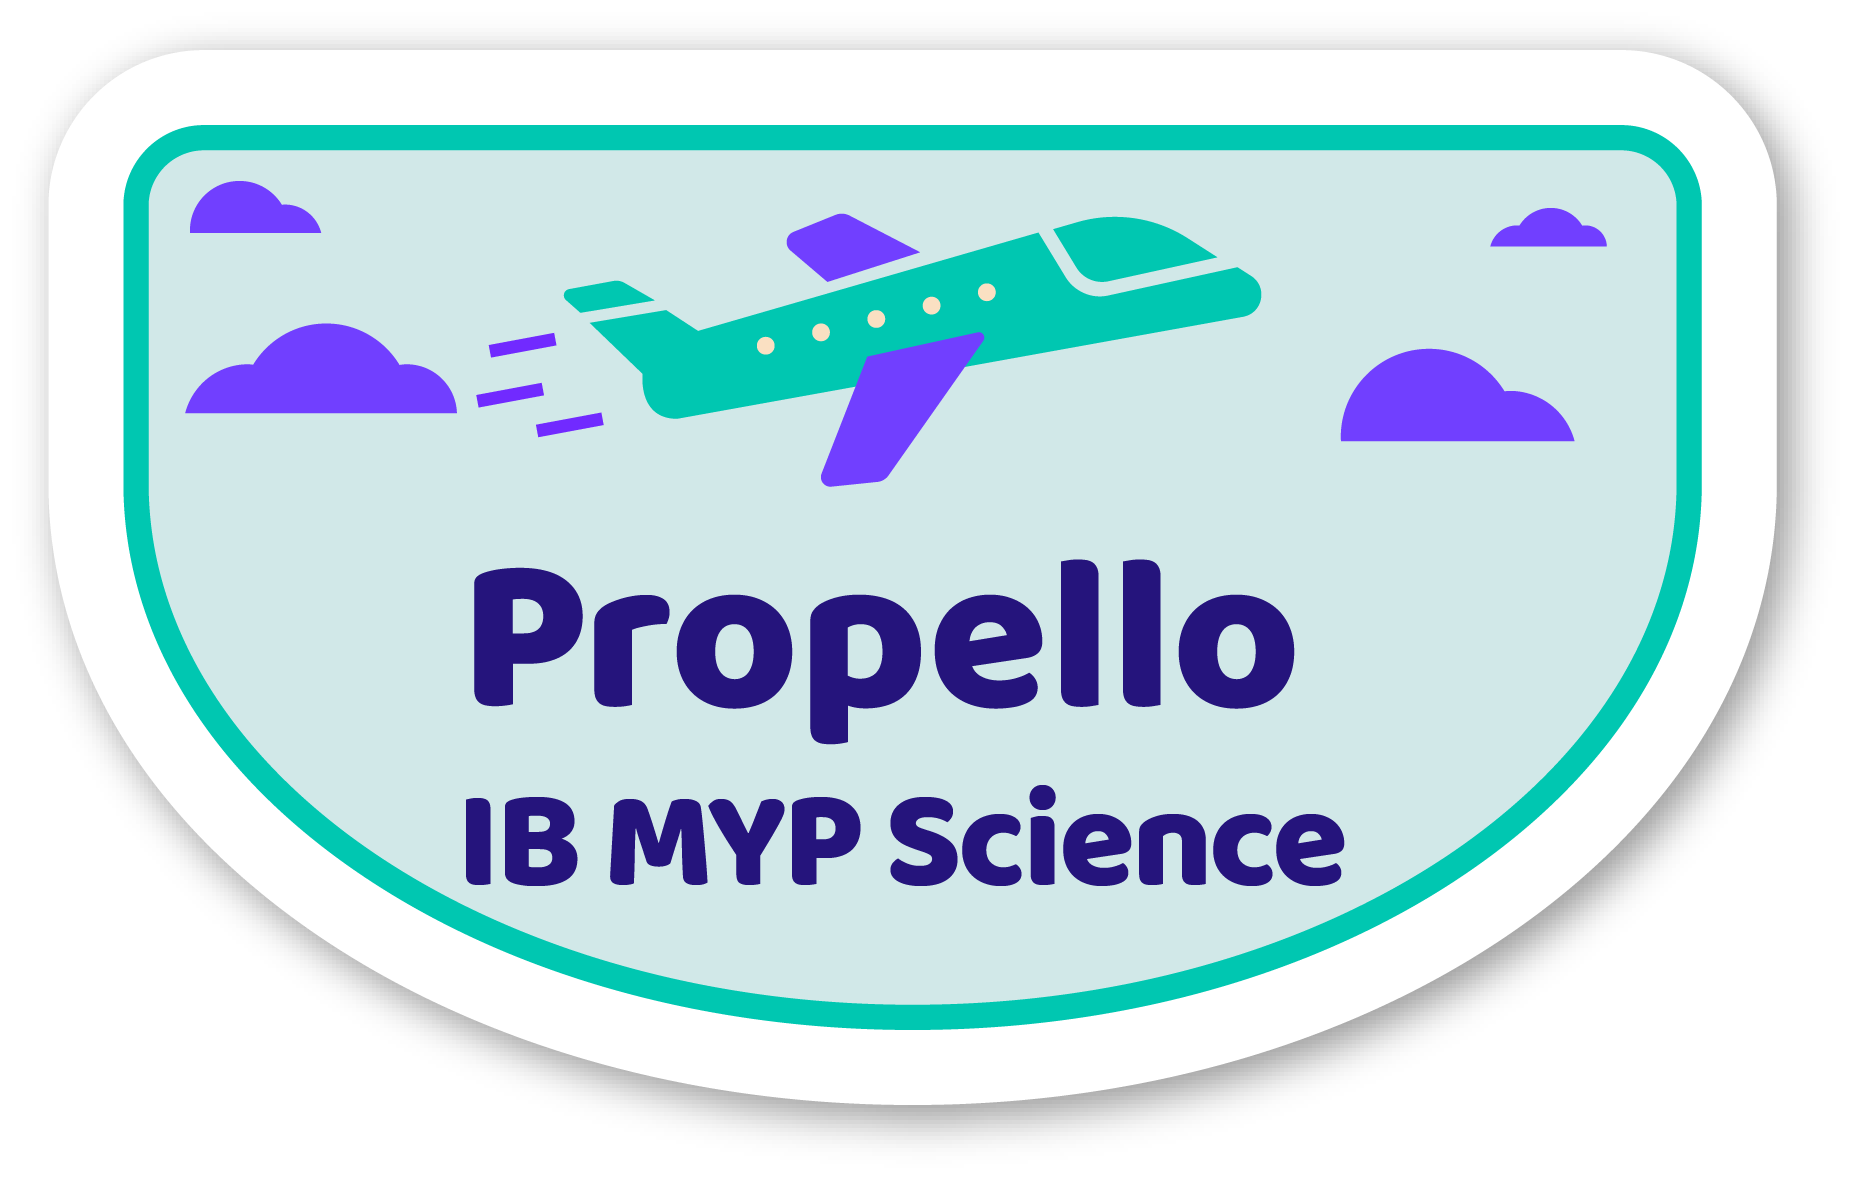 Image representing Propello's IB MYP Science curriculum 